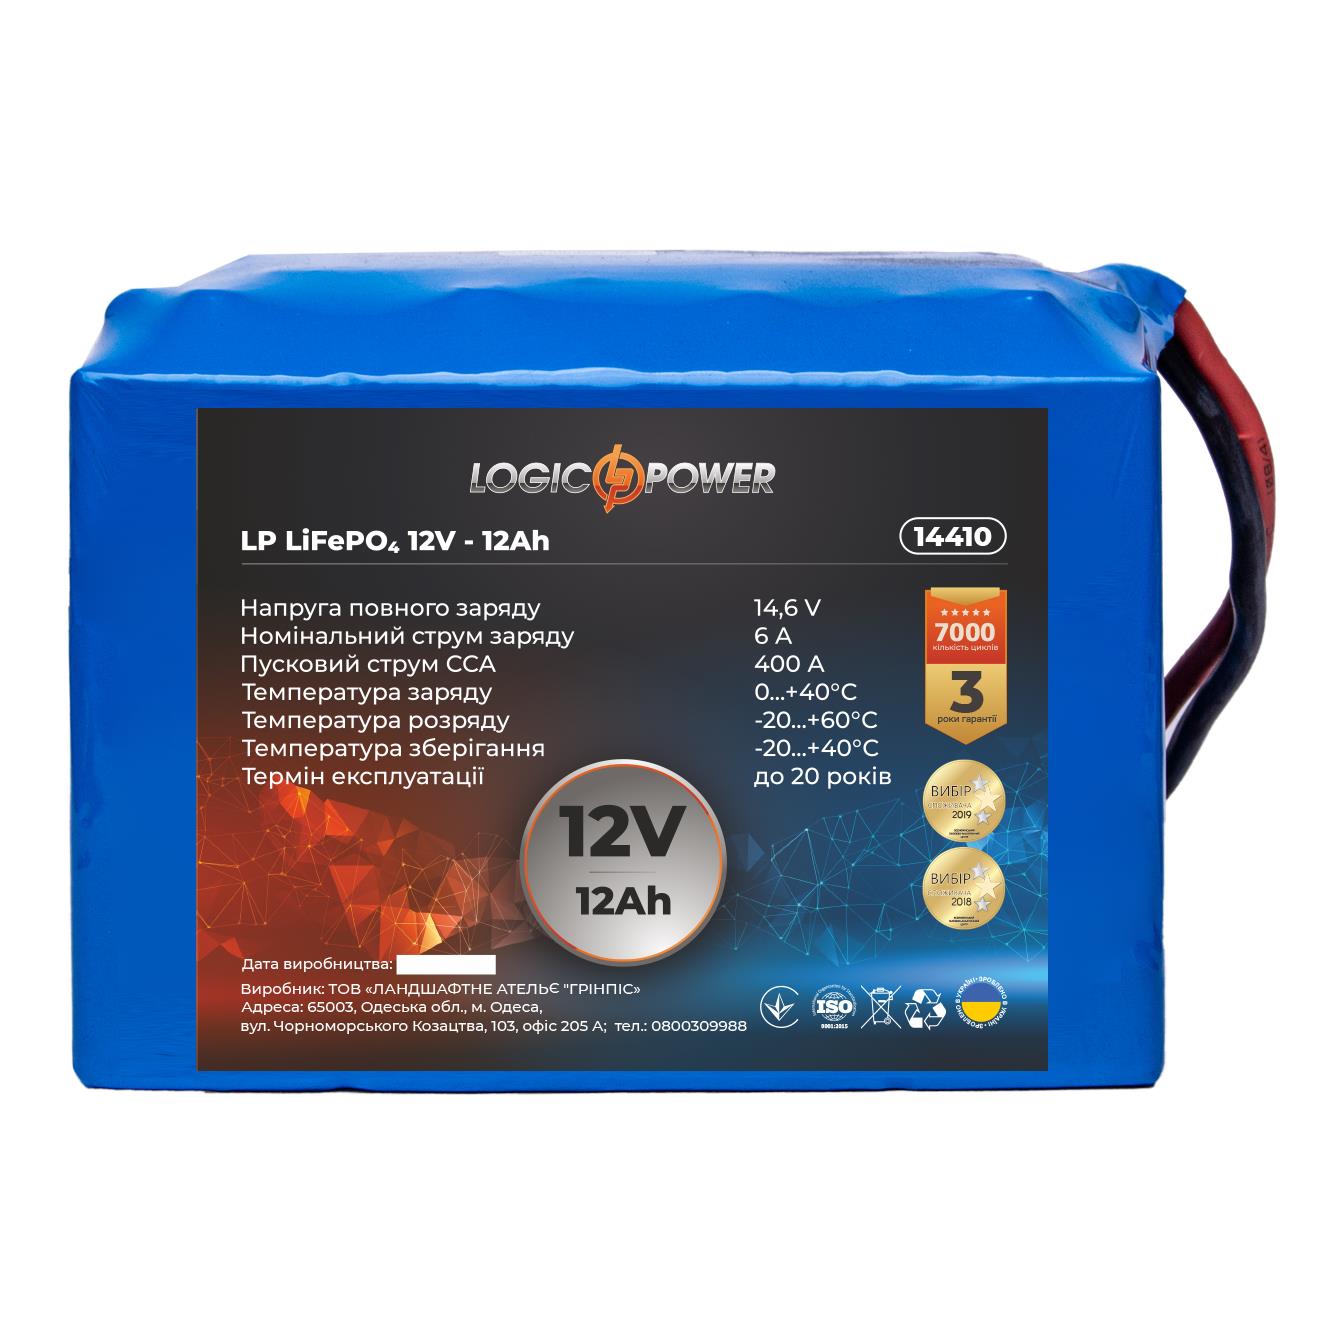 Аккумулятор литий-железо-фосфатный LogicPower LP LiFePO4 12V - 12 Ah для мопеда (14410)